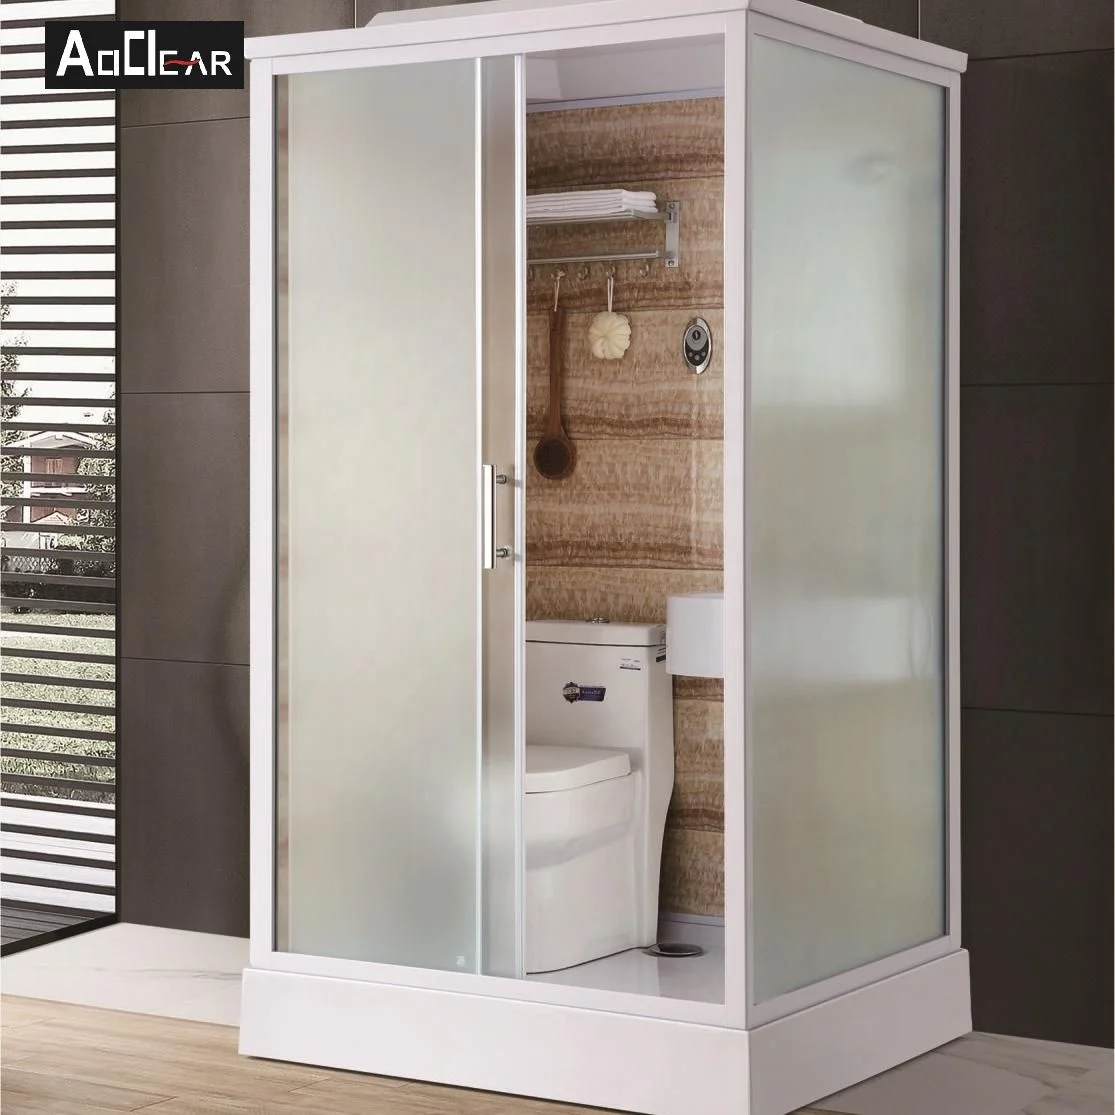 Aokeliya portable all in one shower toilet unit prefab room with pod modular bathroom (1600224107103)